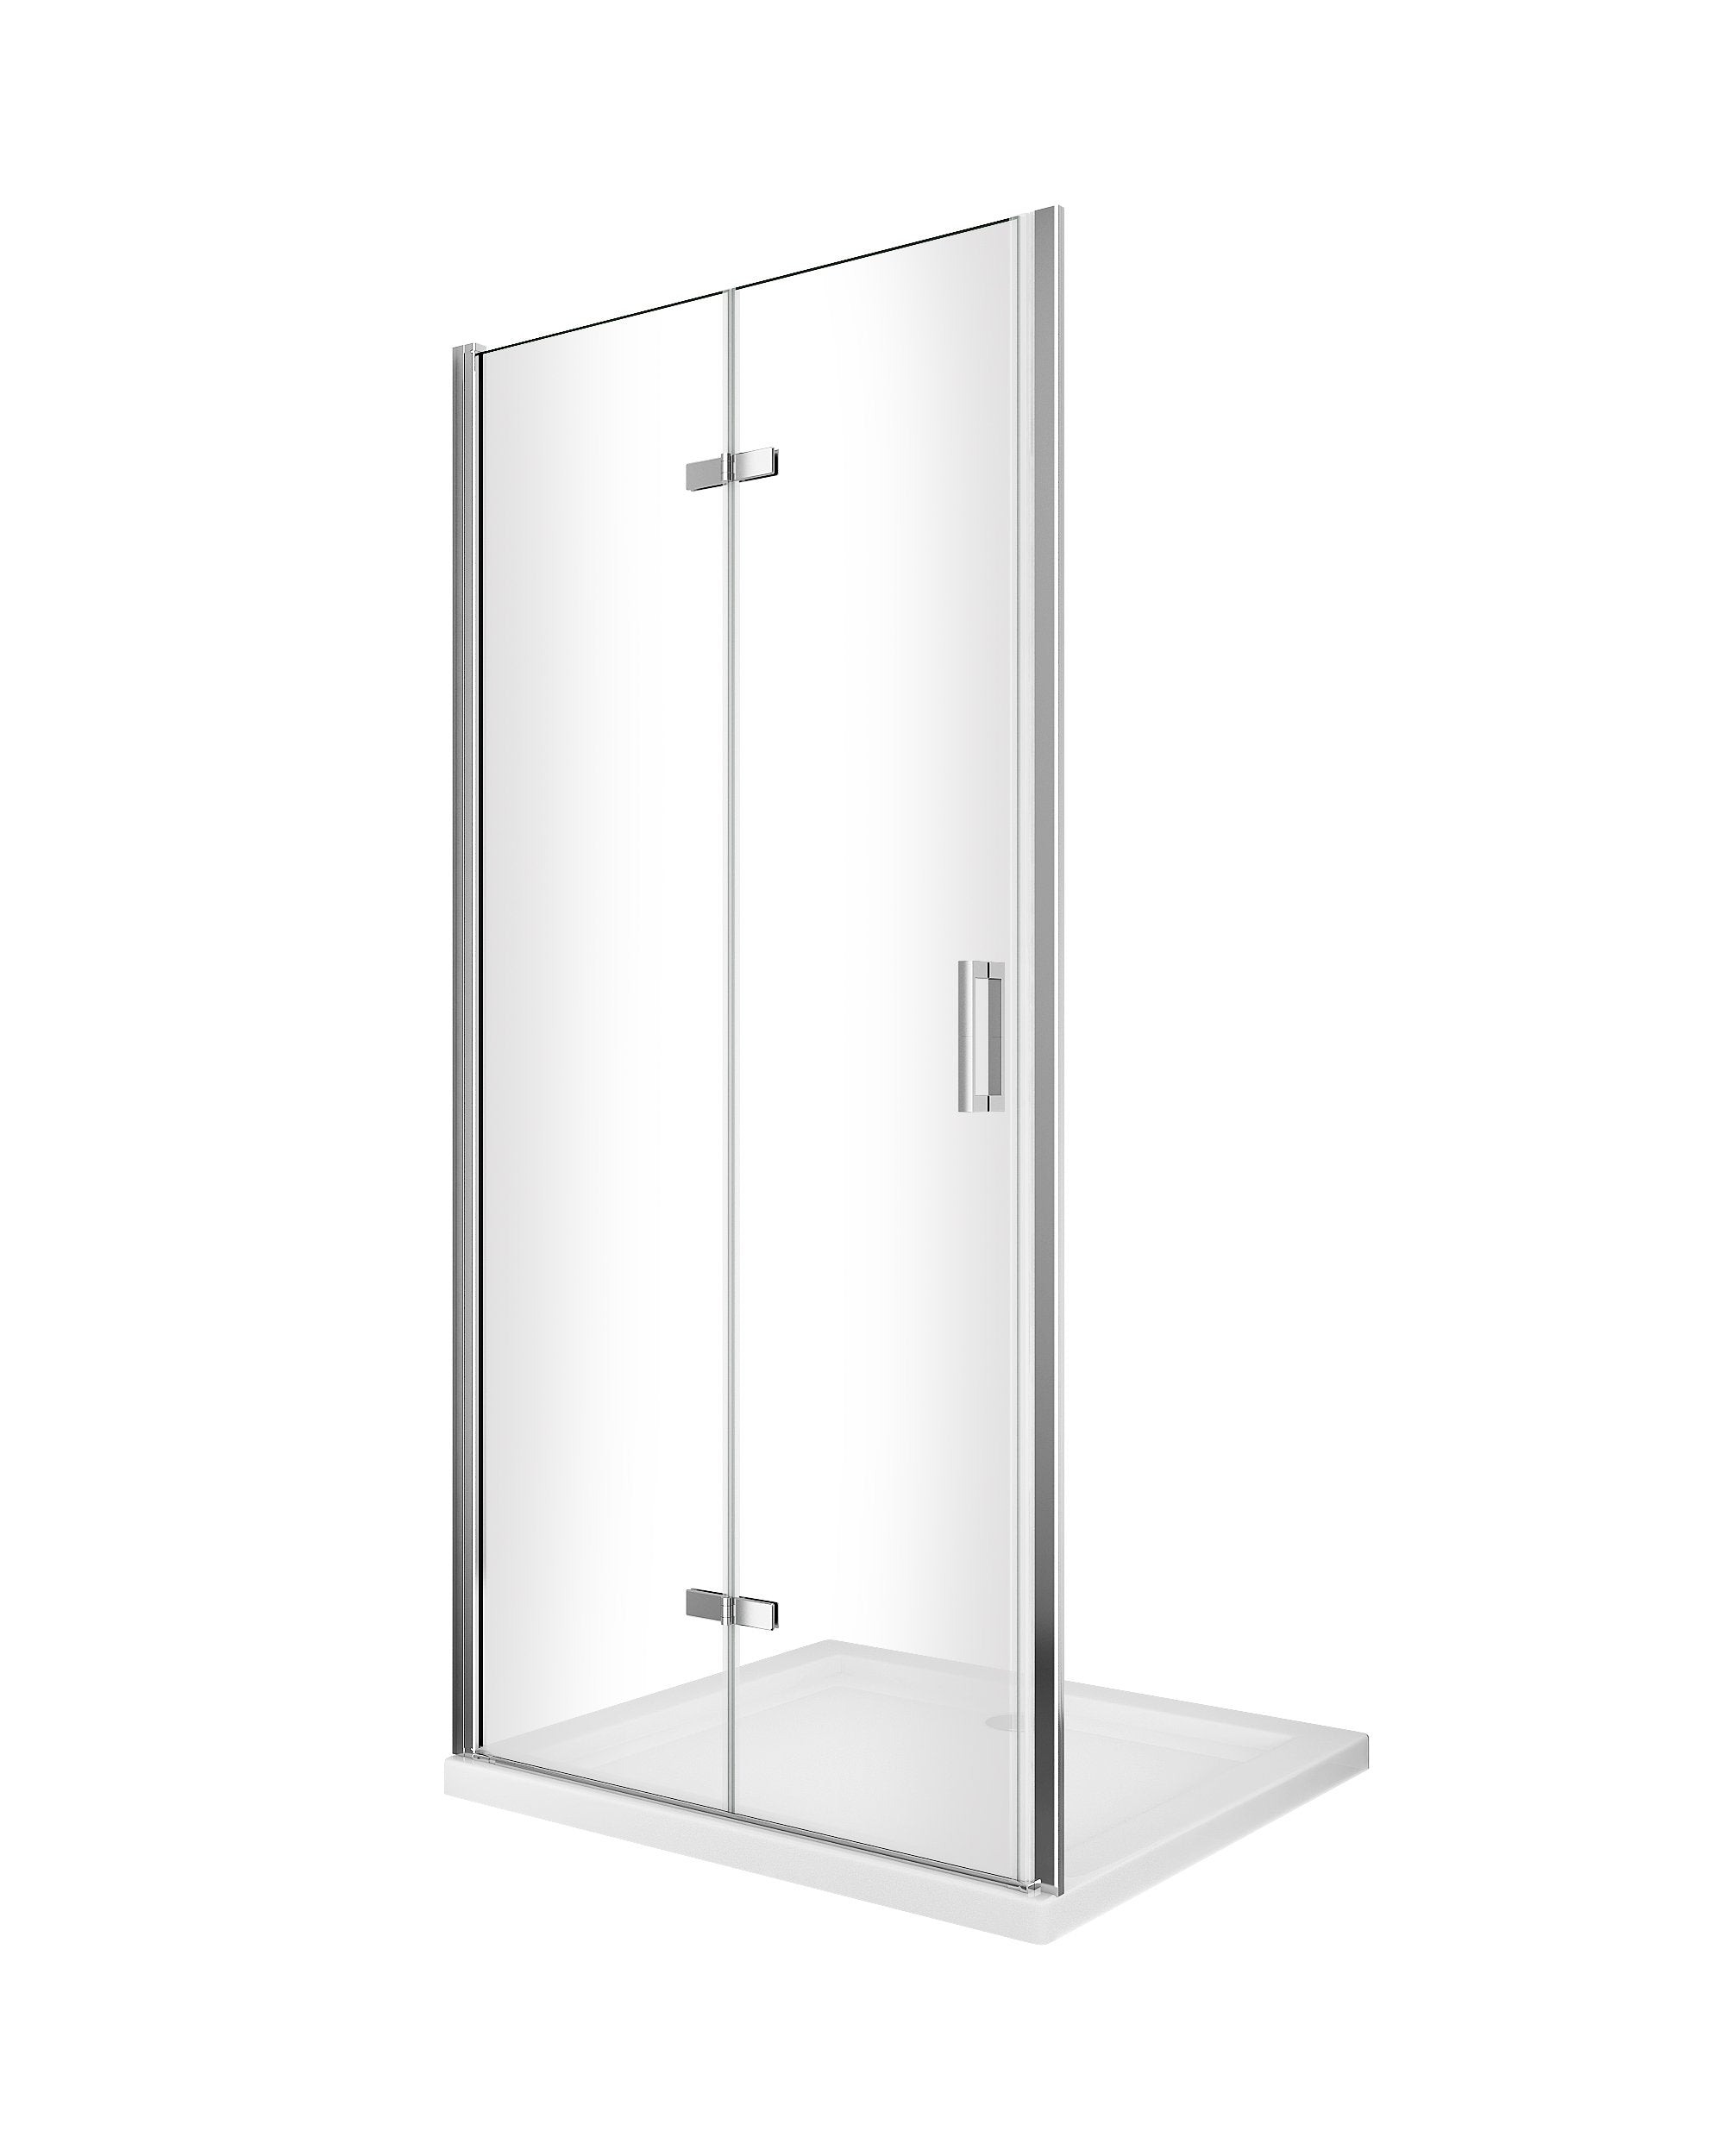 Porta box doccia con apertura a libro pieghevole a soffietto per installazione in nicchia H 190 cromo trasparente anticalcare misura 83-86,5